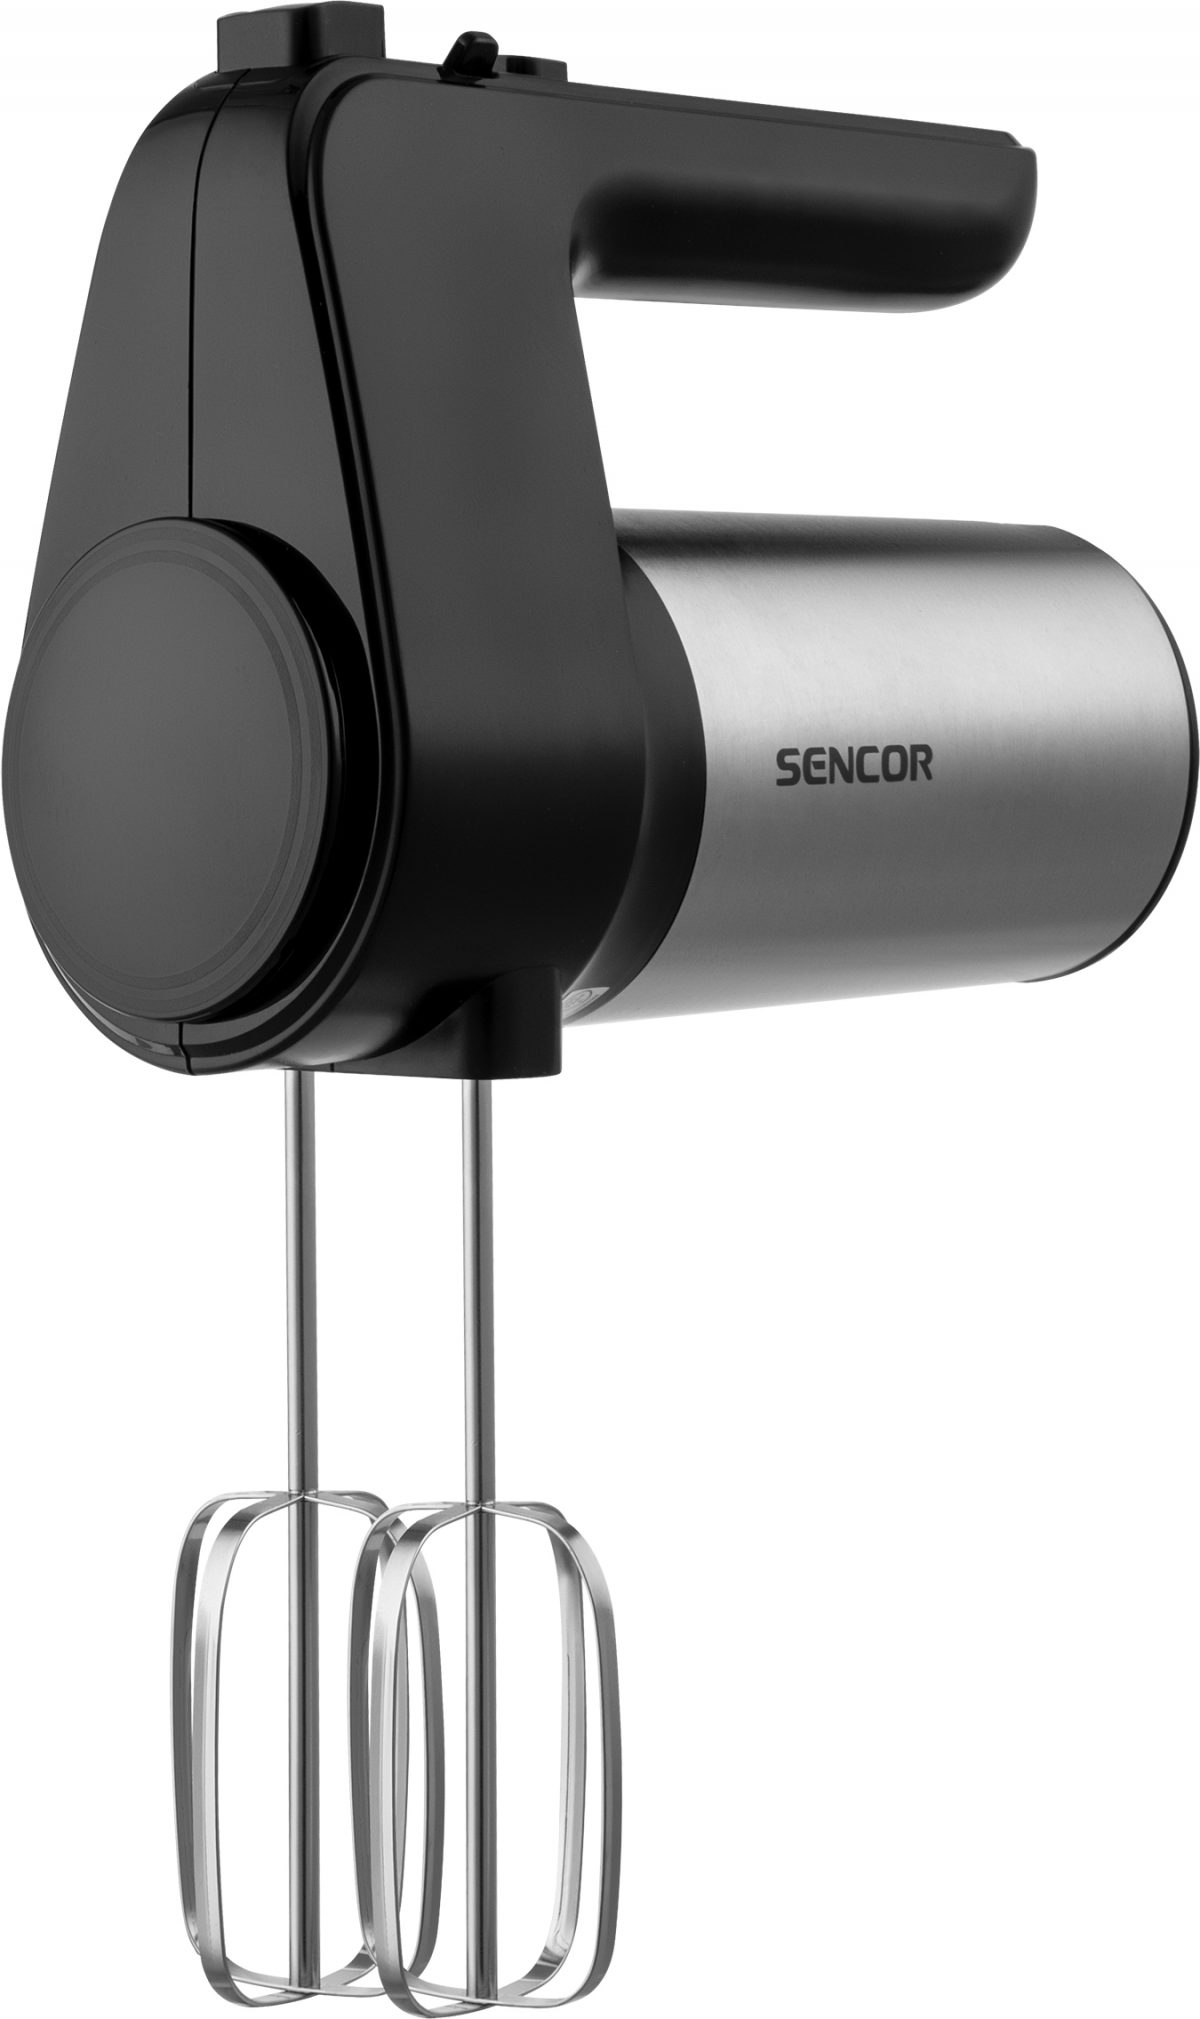 همزن برقی سنکور مدل SHM 5207SS